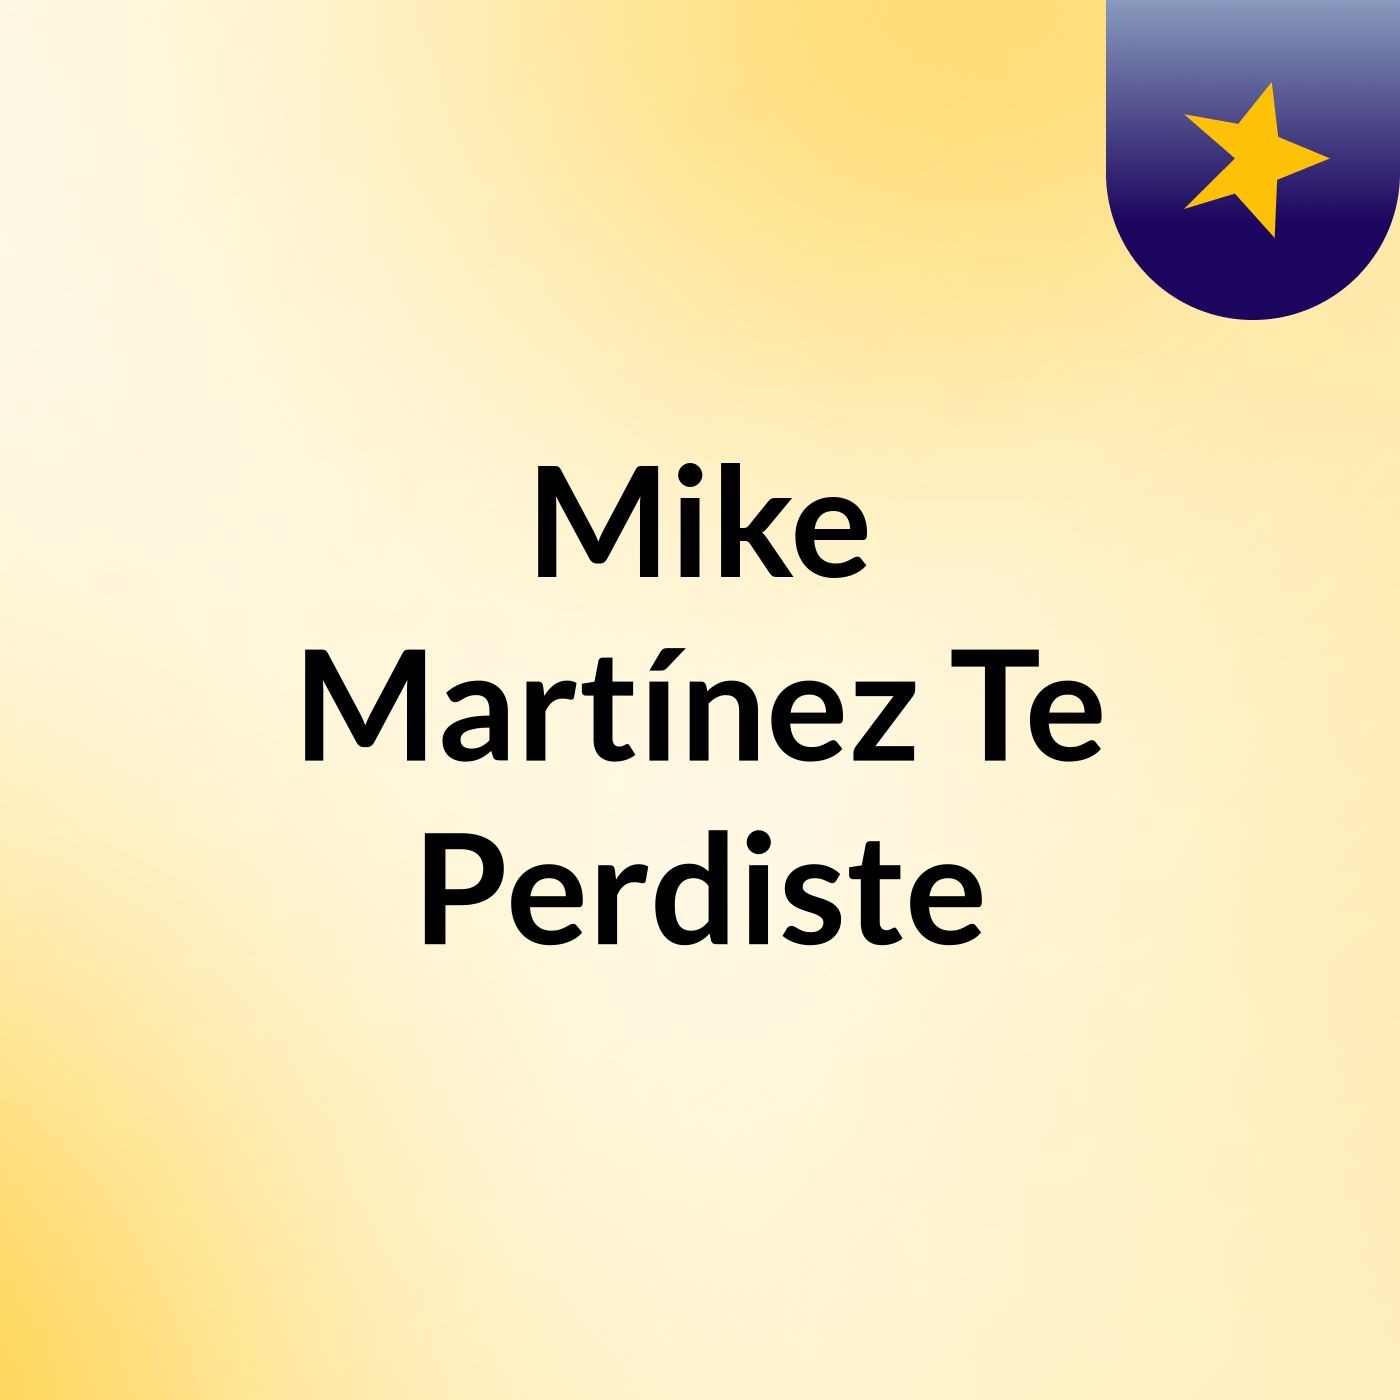 Episodio 2 - Mike Martínez' Eso Y Más